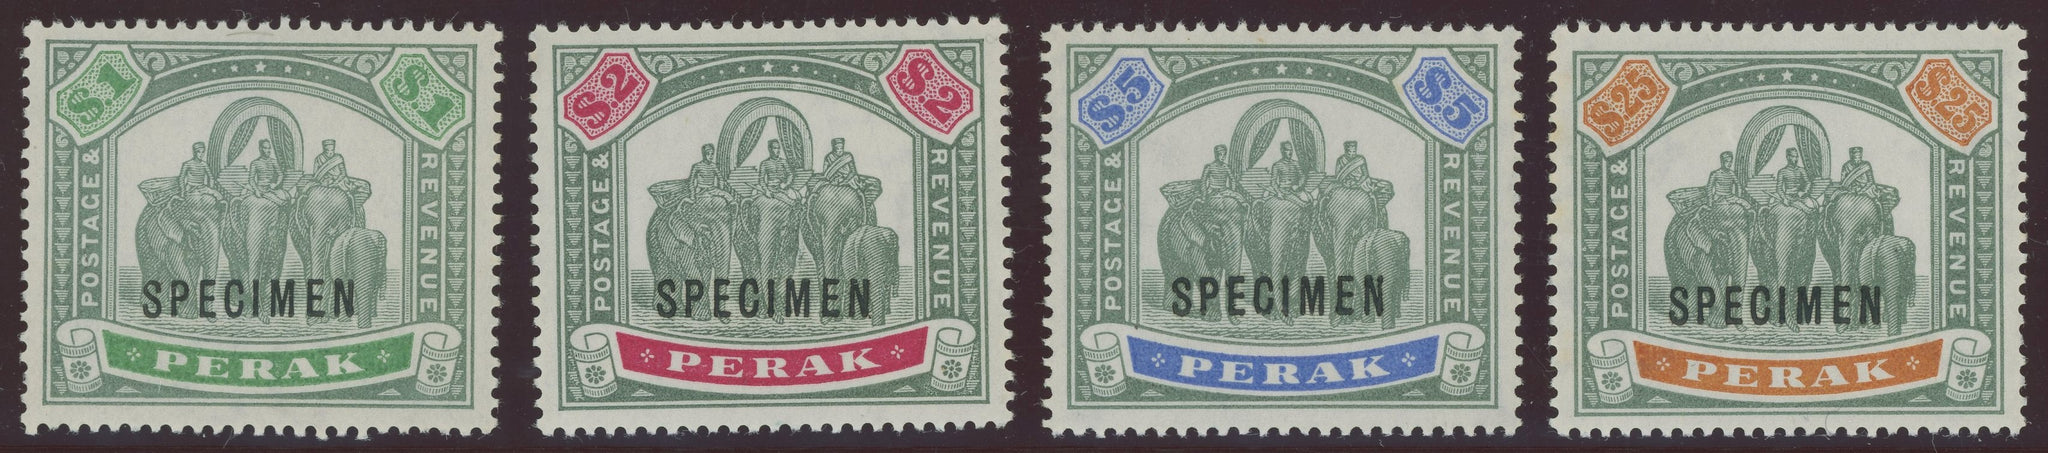 Malayan States Perak SG 76-80 $1, $2, $5 & $25 Specimen Stamps